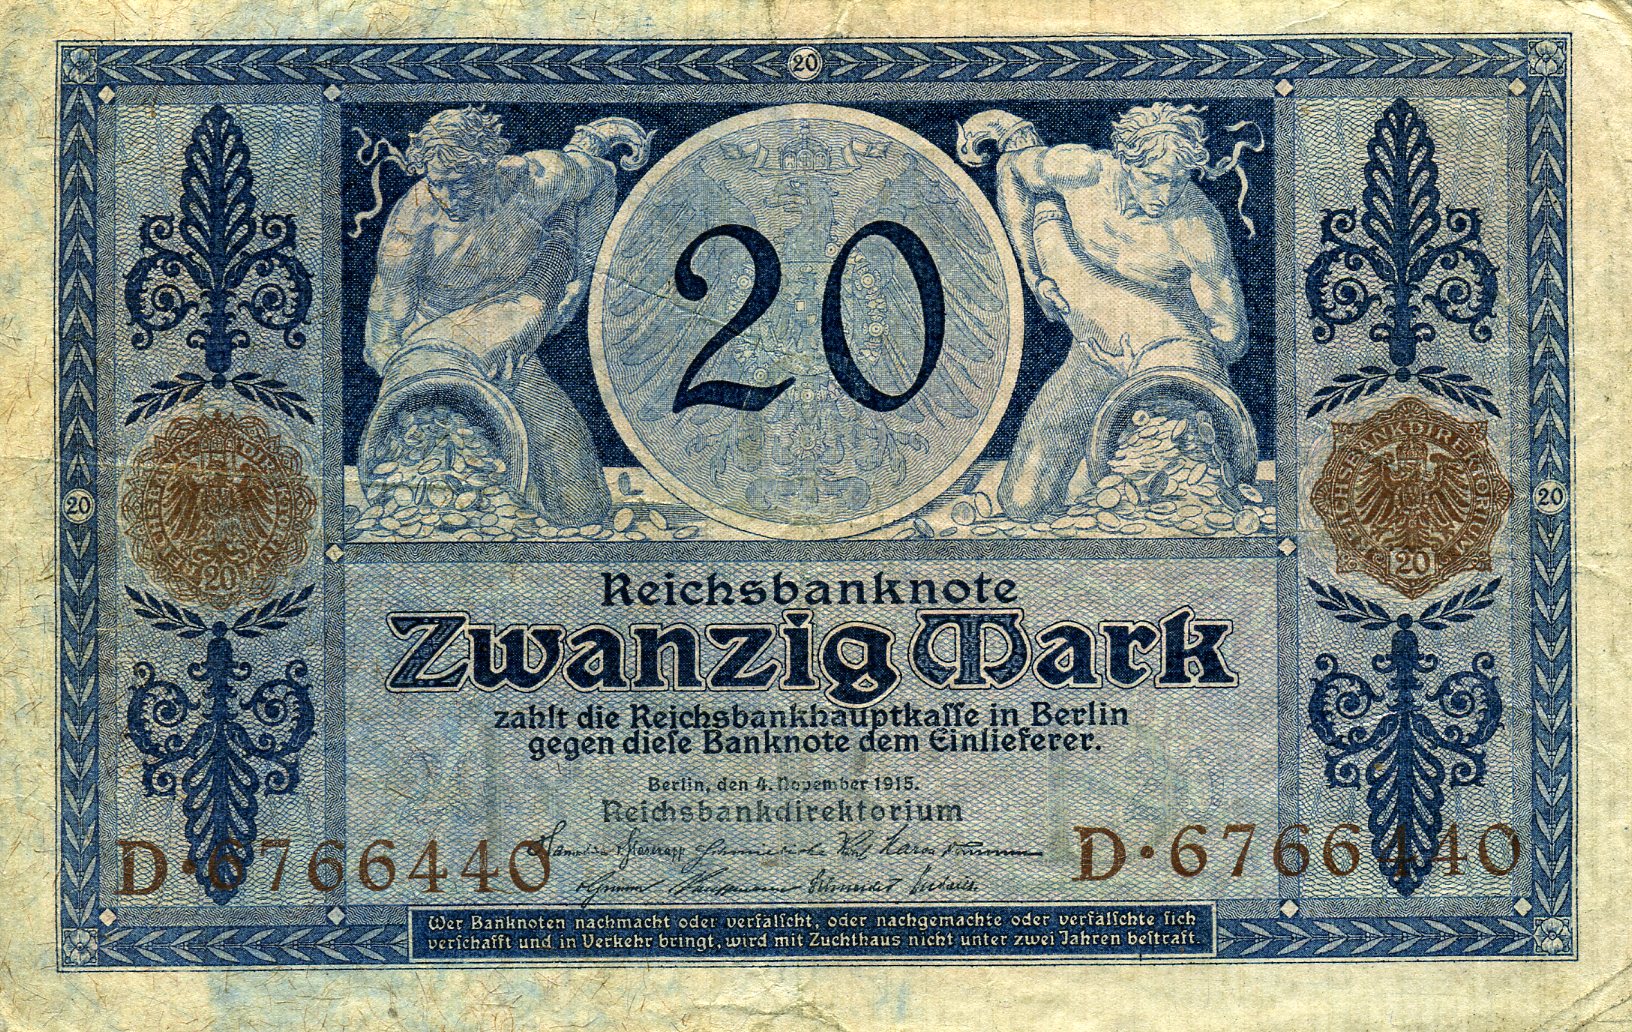 20 марок 4 ноября 1915 года. Коричневая печать. Аверс. Реферат Рефератович.